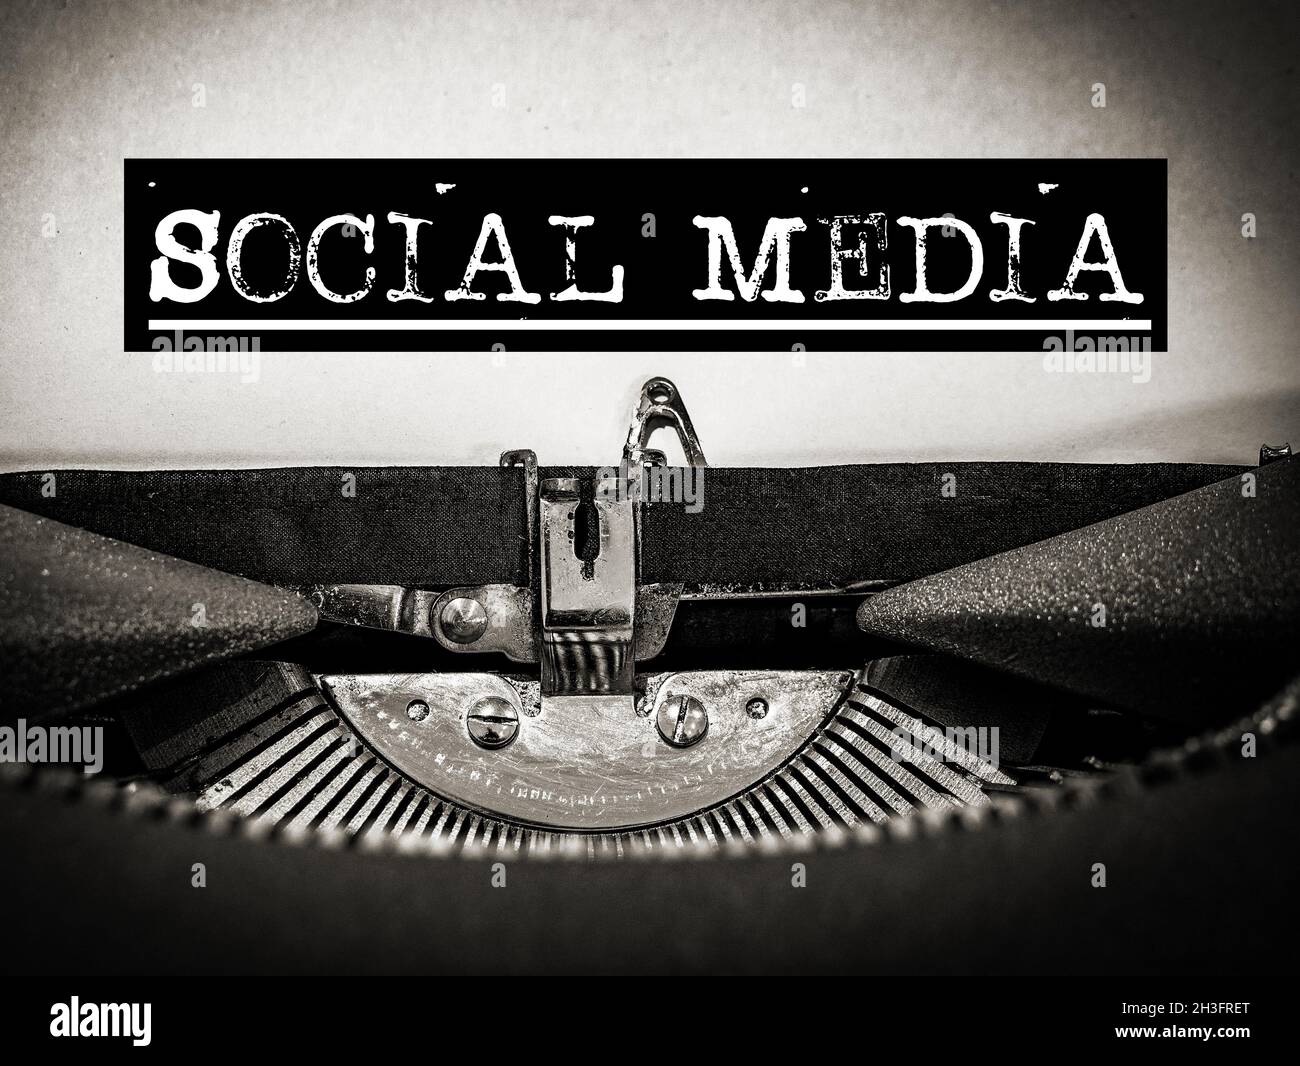 Schreibmaschine mit Social Media angezeigt Stockfoto